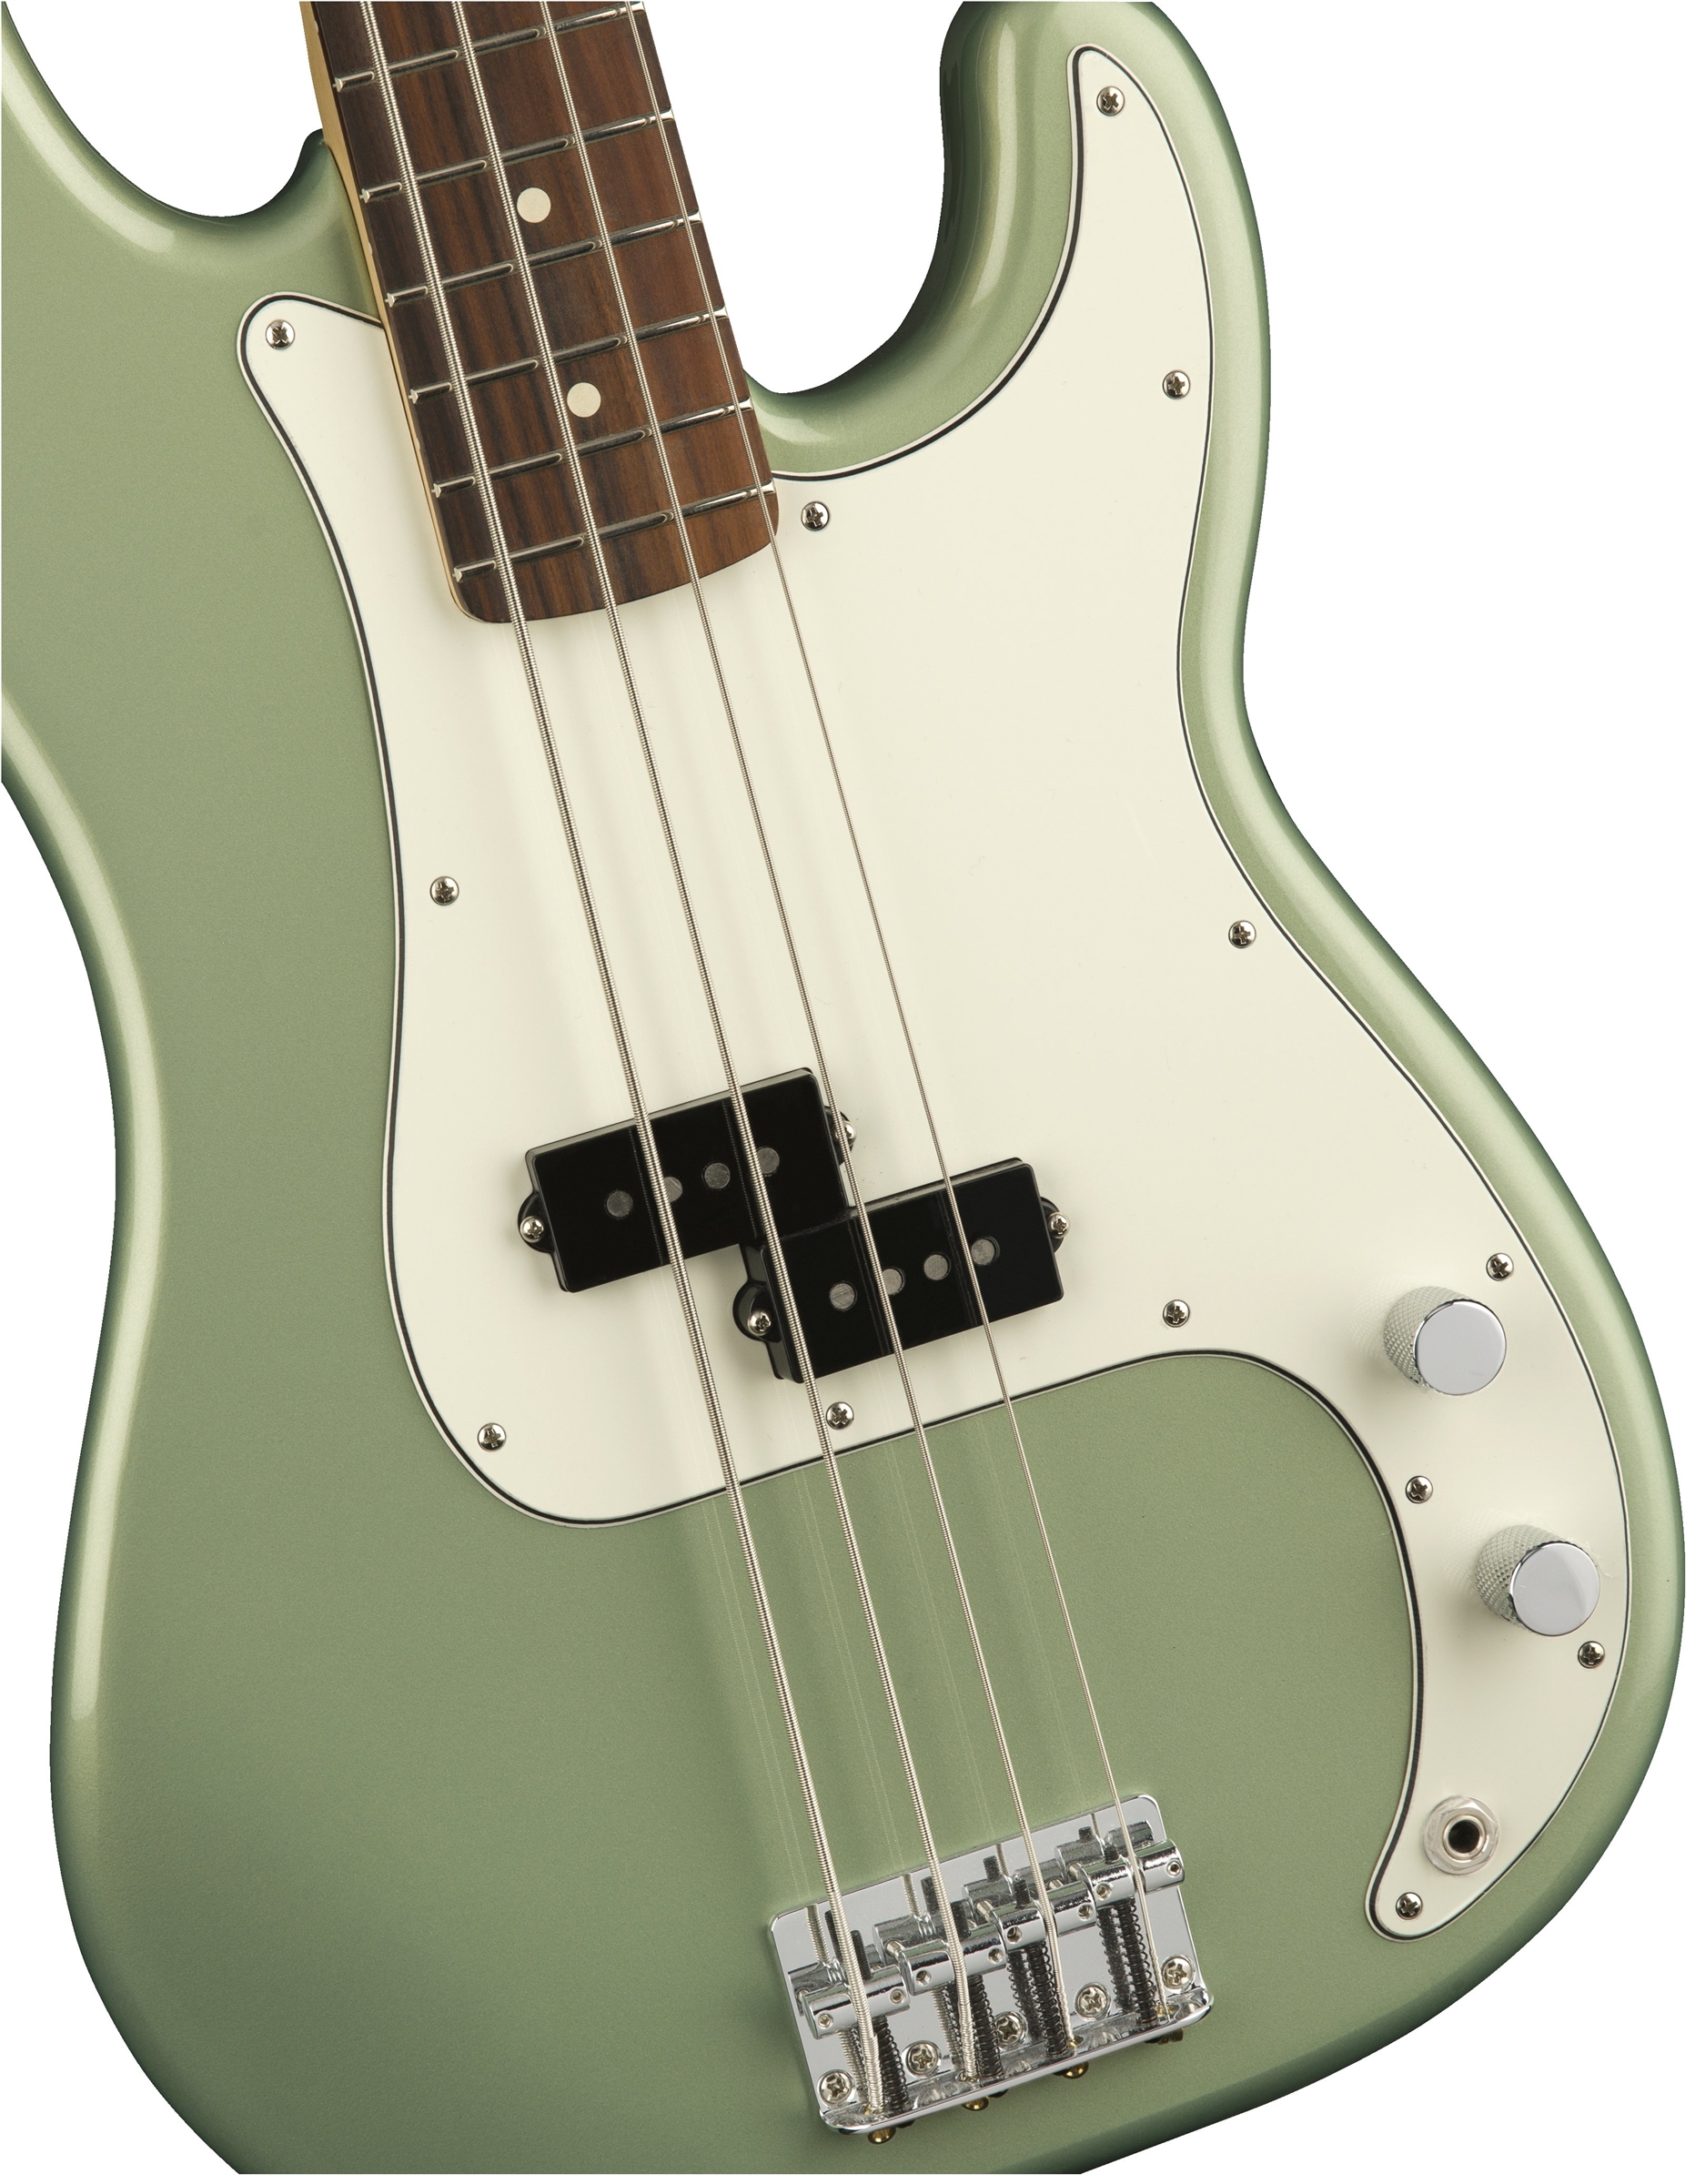 Fender Precision Bass Player Mex Pf - Sage Green Metallic - Bajo eléctrico de cuerpo sólido - Variation 2